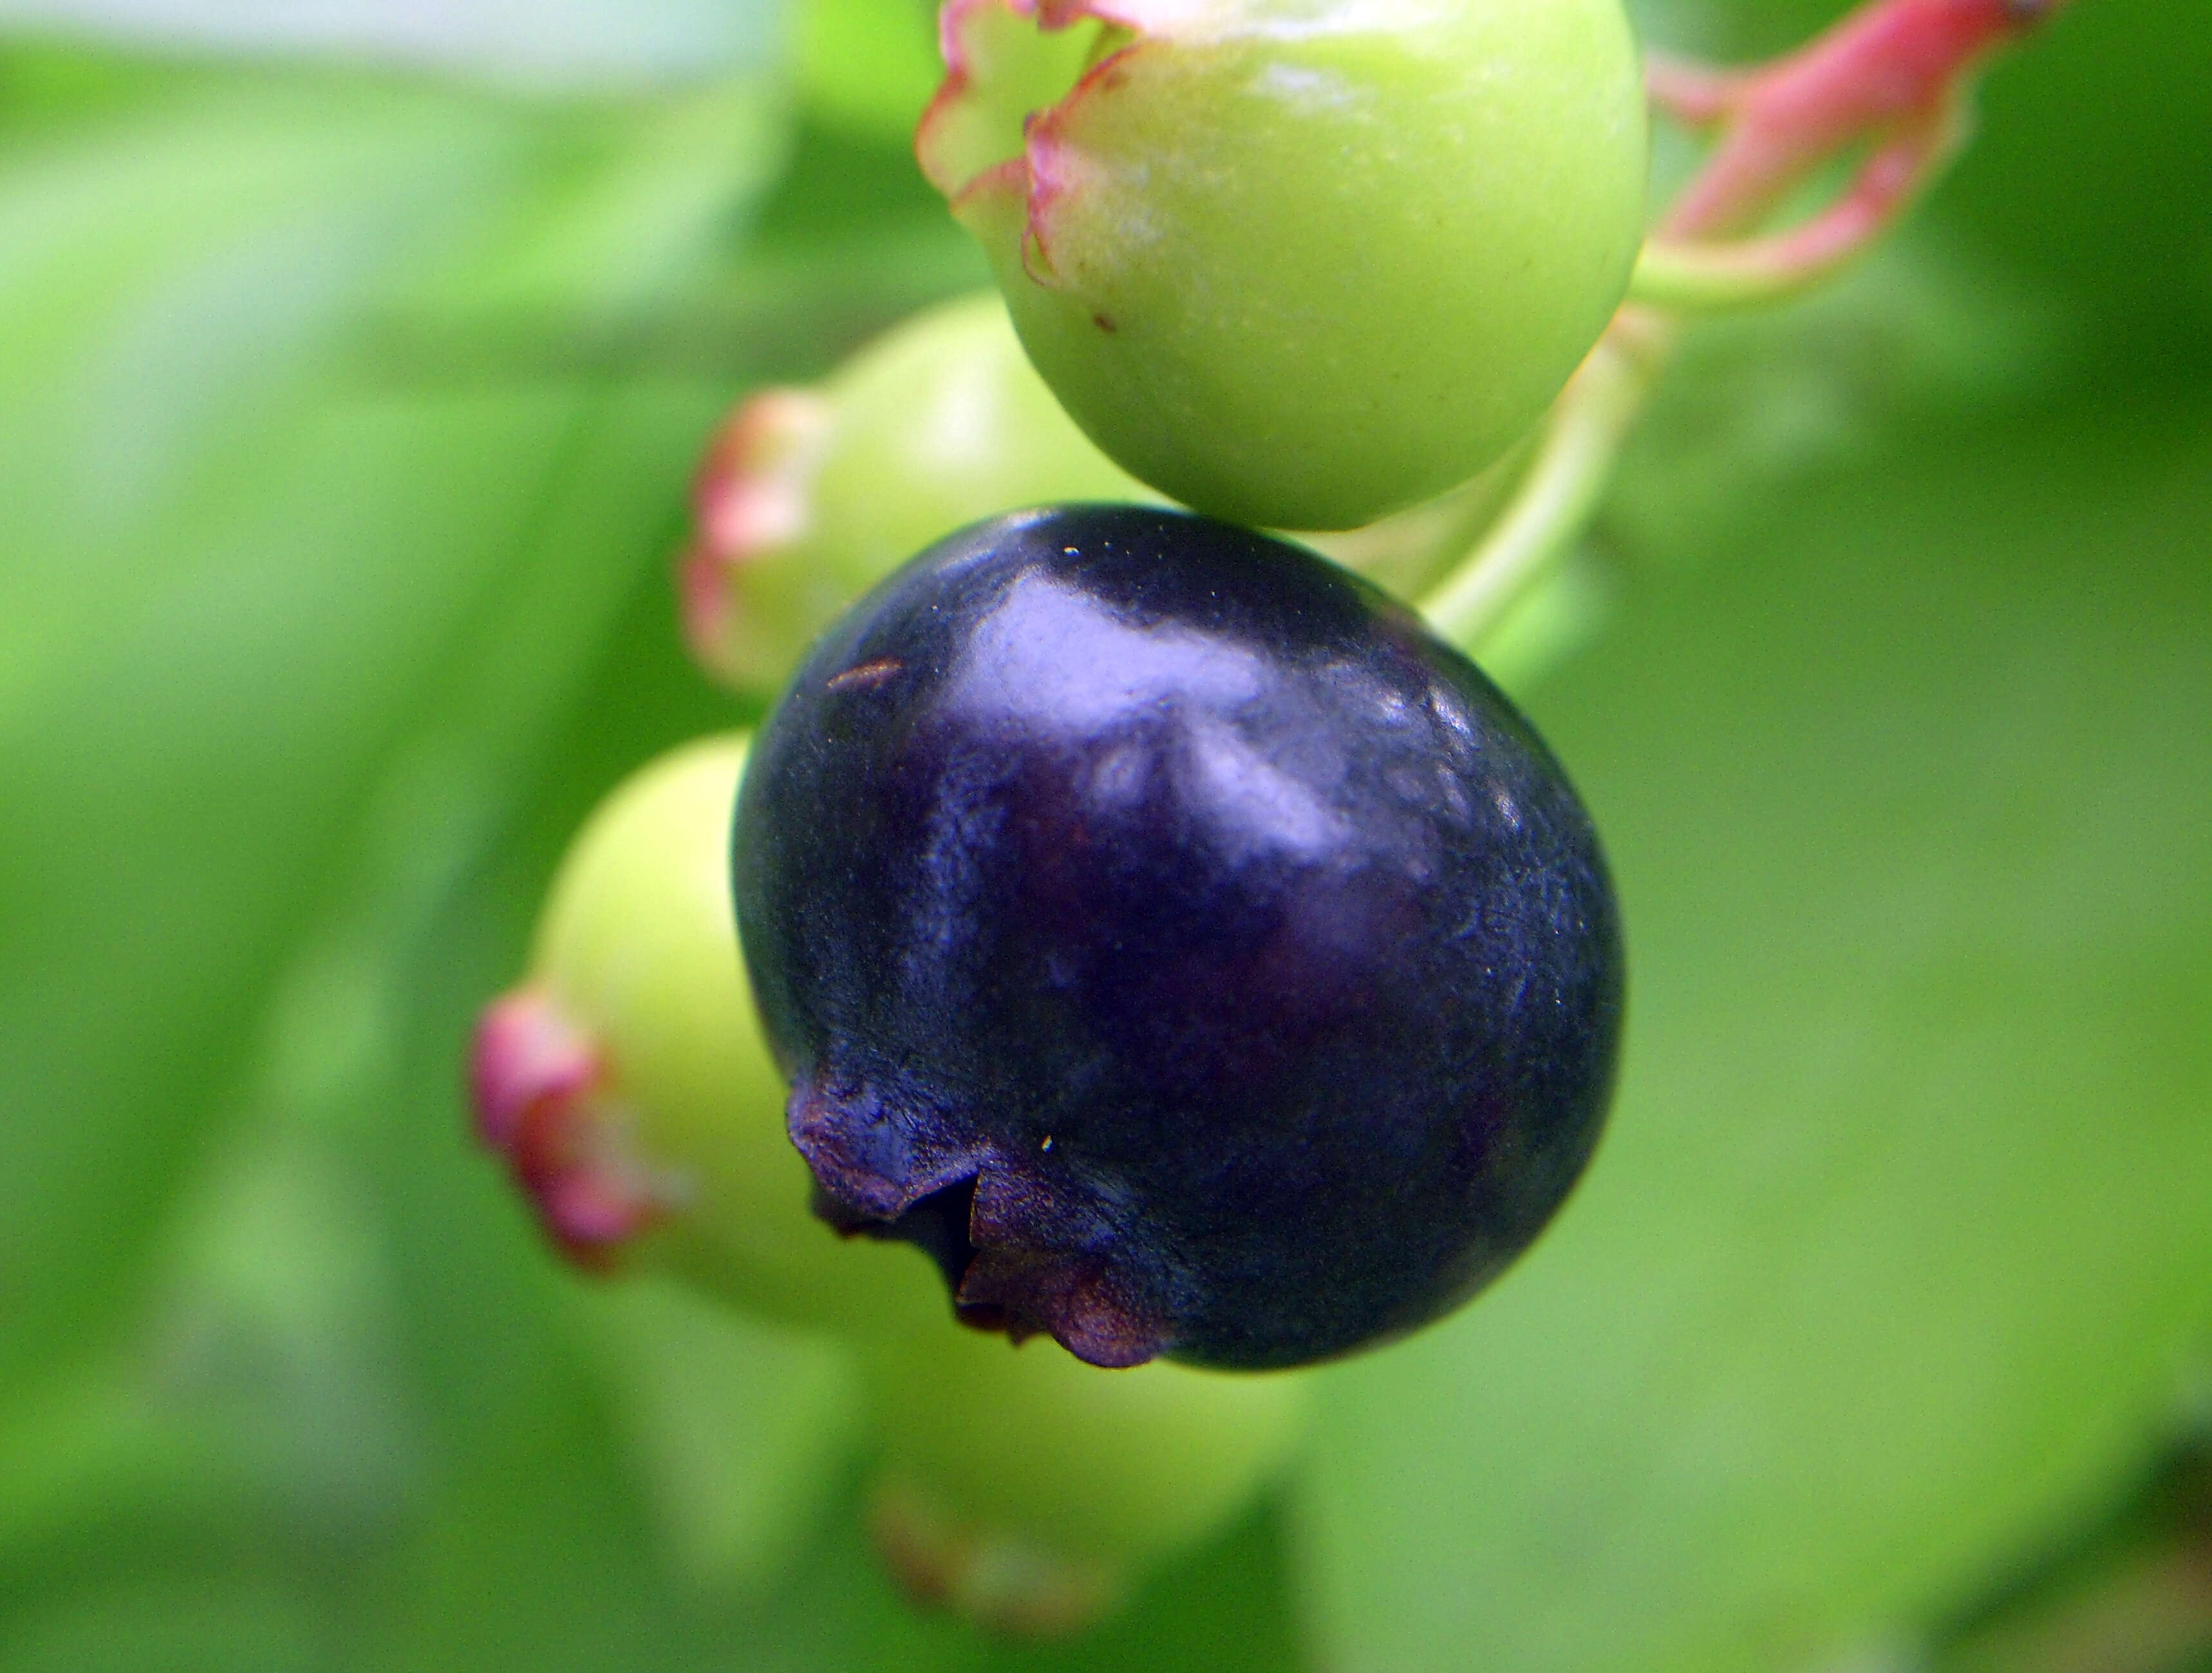 Image of Highbush blueberry